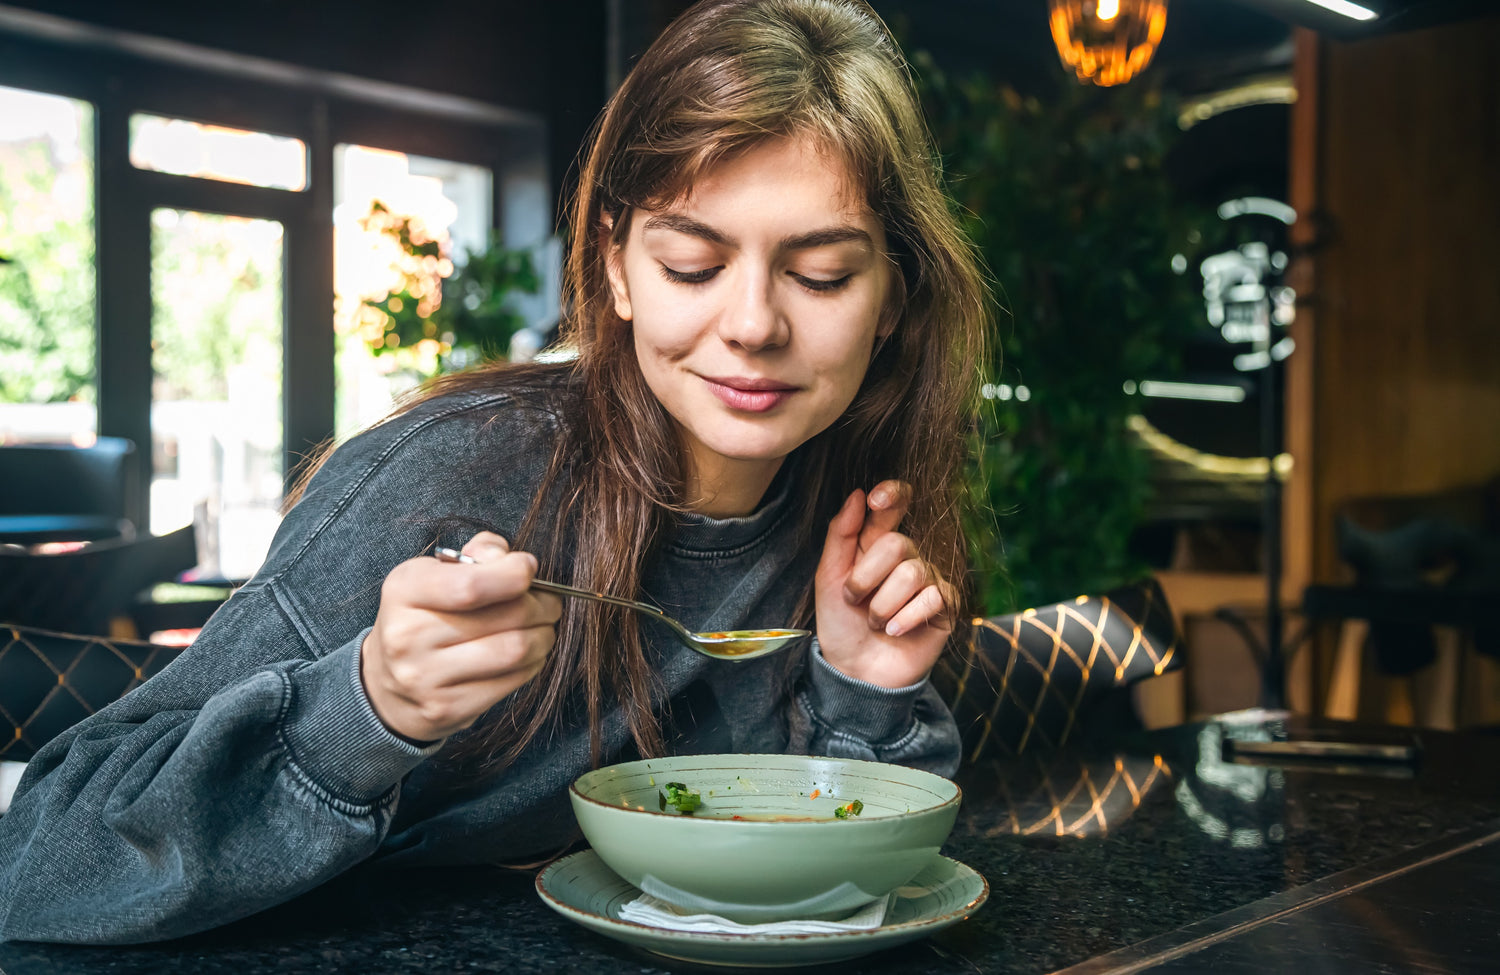 Frau isst eine Suppe aus einer Schüssel.